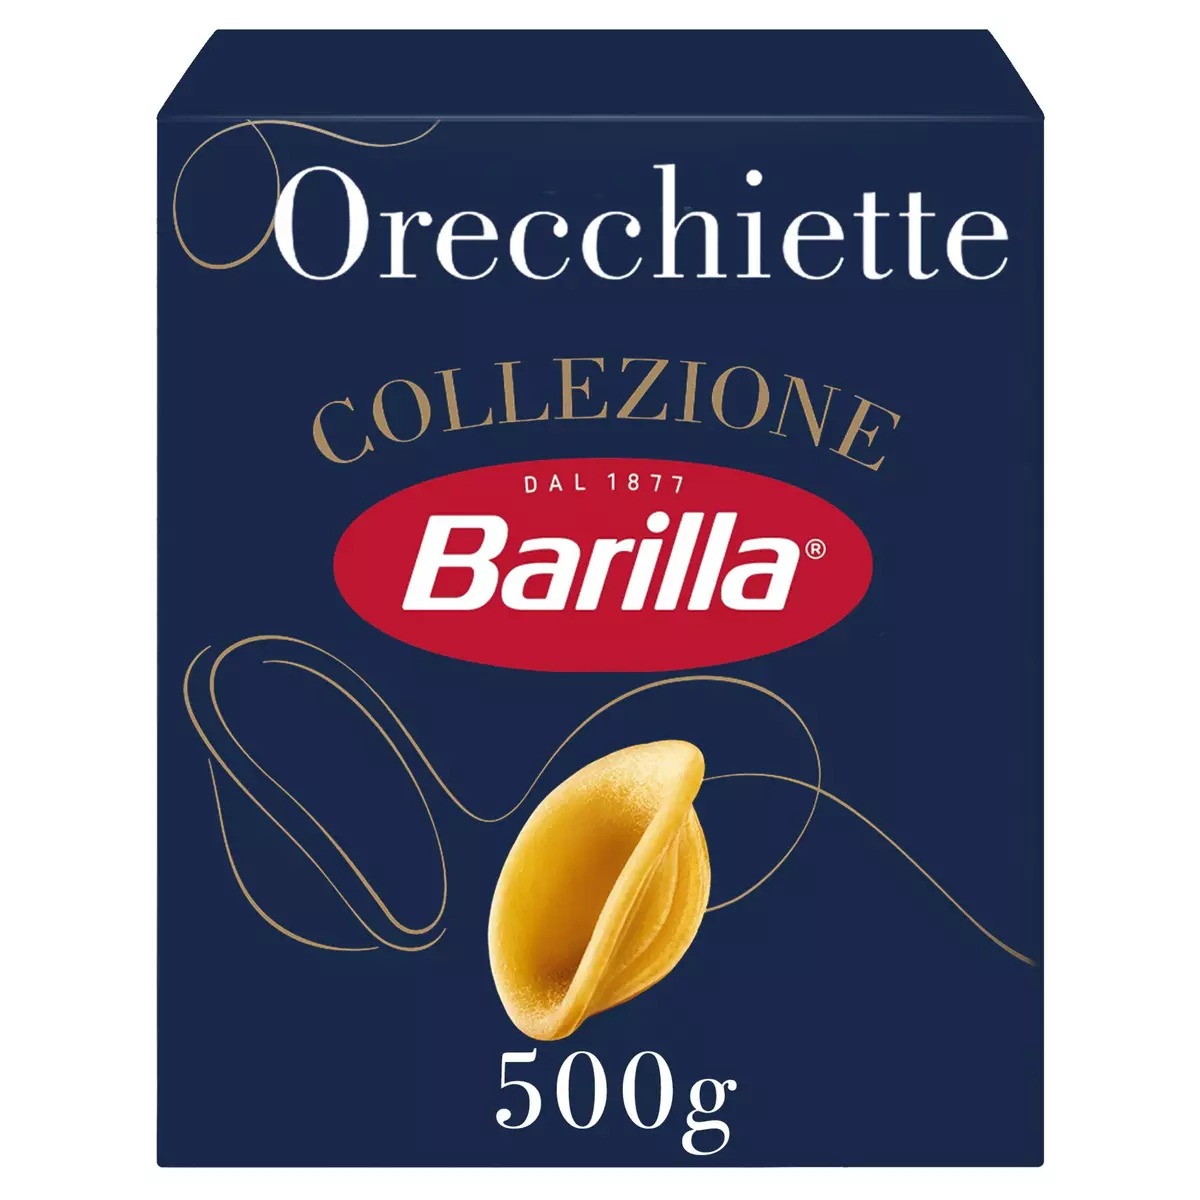 BARILLA Collezione Orecchiette 500g